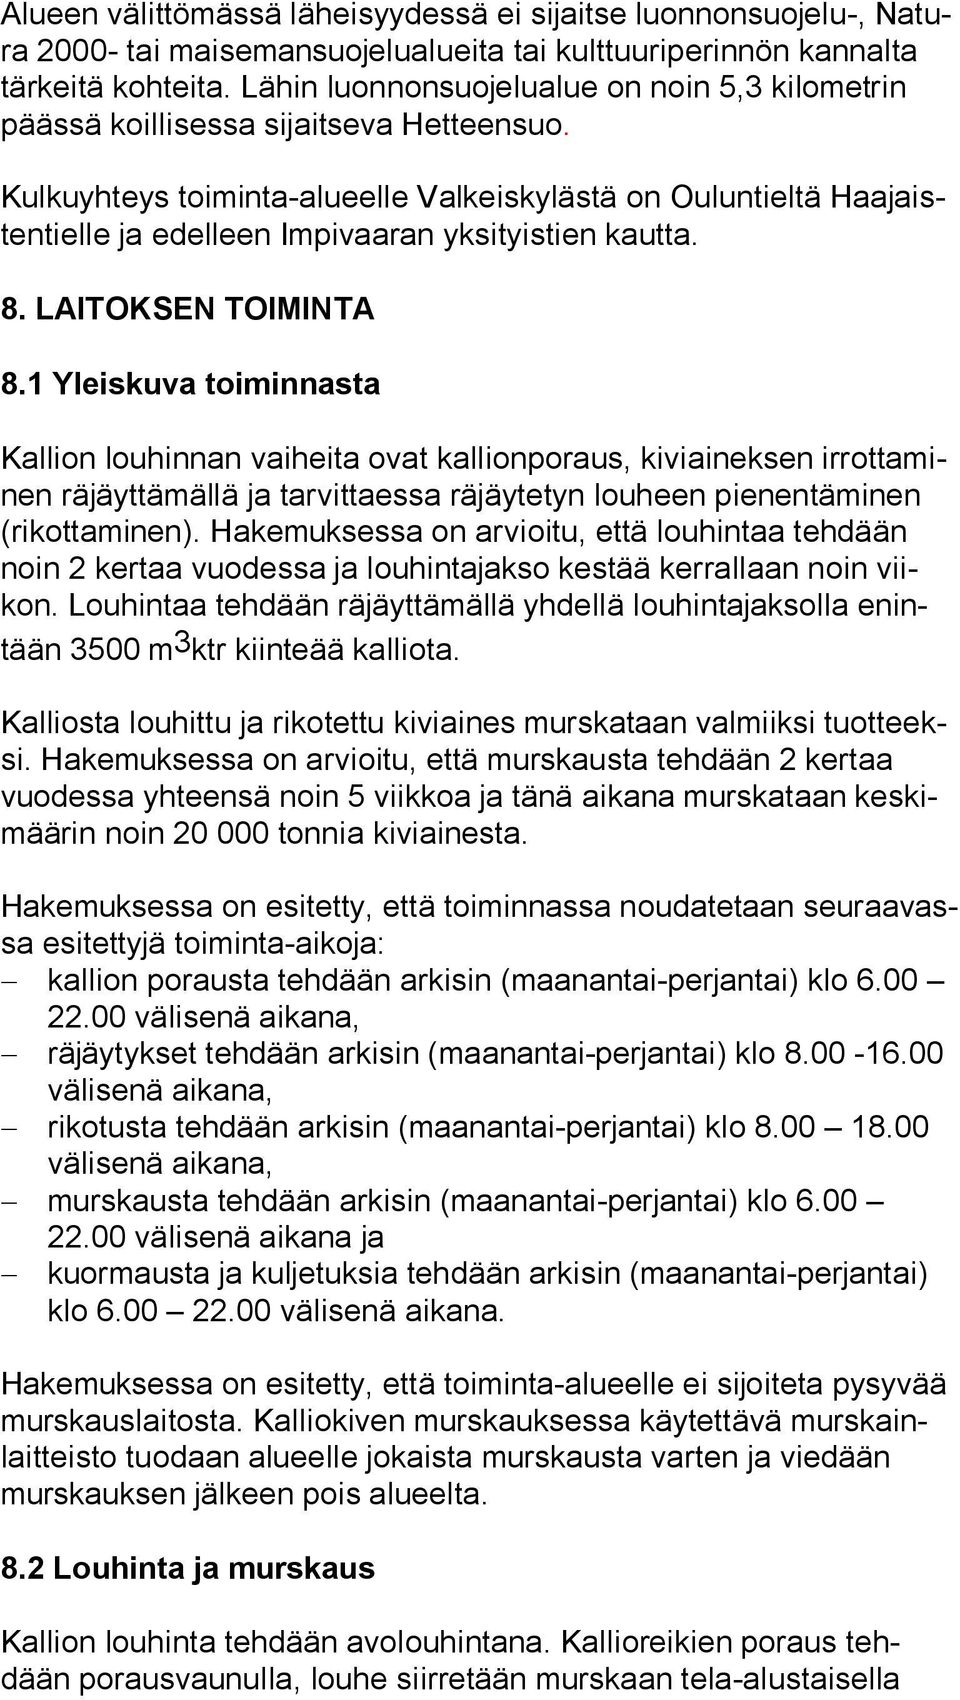 Kulkuyhteys toiminta-alueelle Valkeiskylästä on Ouluntieltä Haa jaisten tiel le ja edelleen Impivaaran yksityistien kautta. 8. LAITOKSEN TOIMINTA 8.